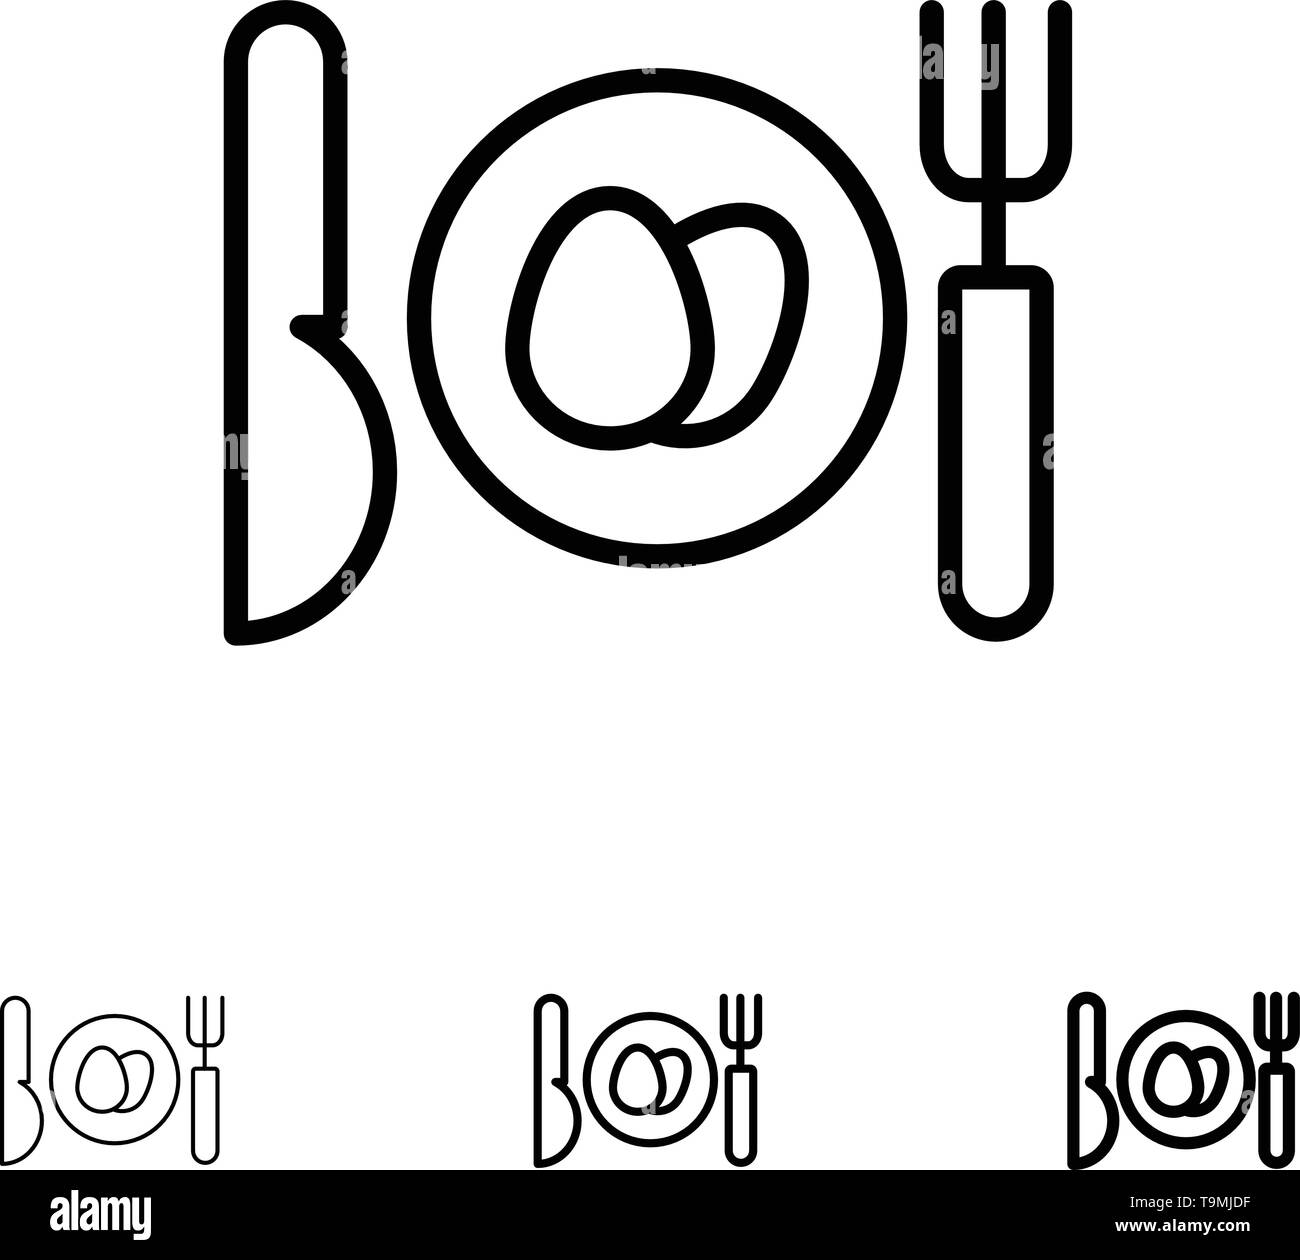 Abendessen, Ei, Ostern Bold und dünne schwarze Linie Icon Set Stock Vektor